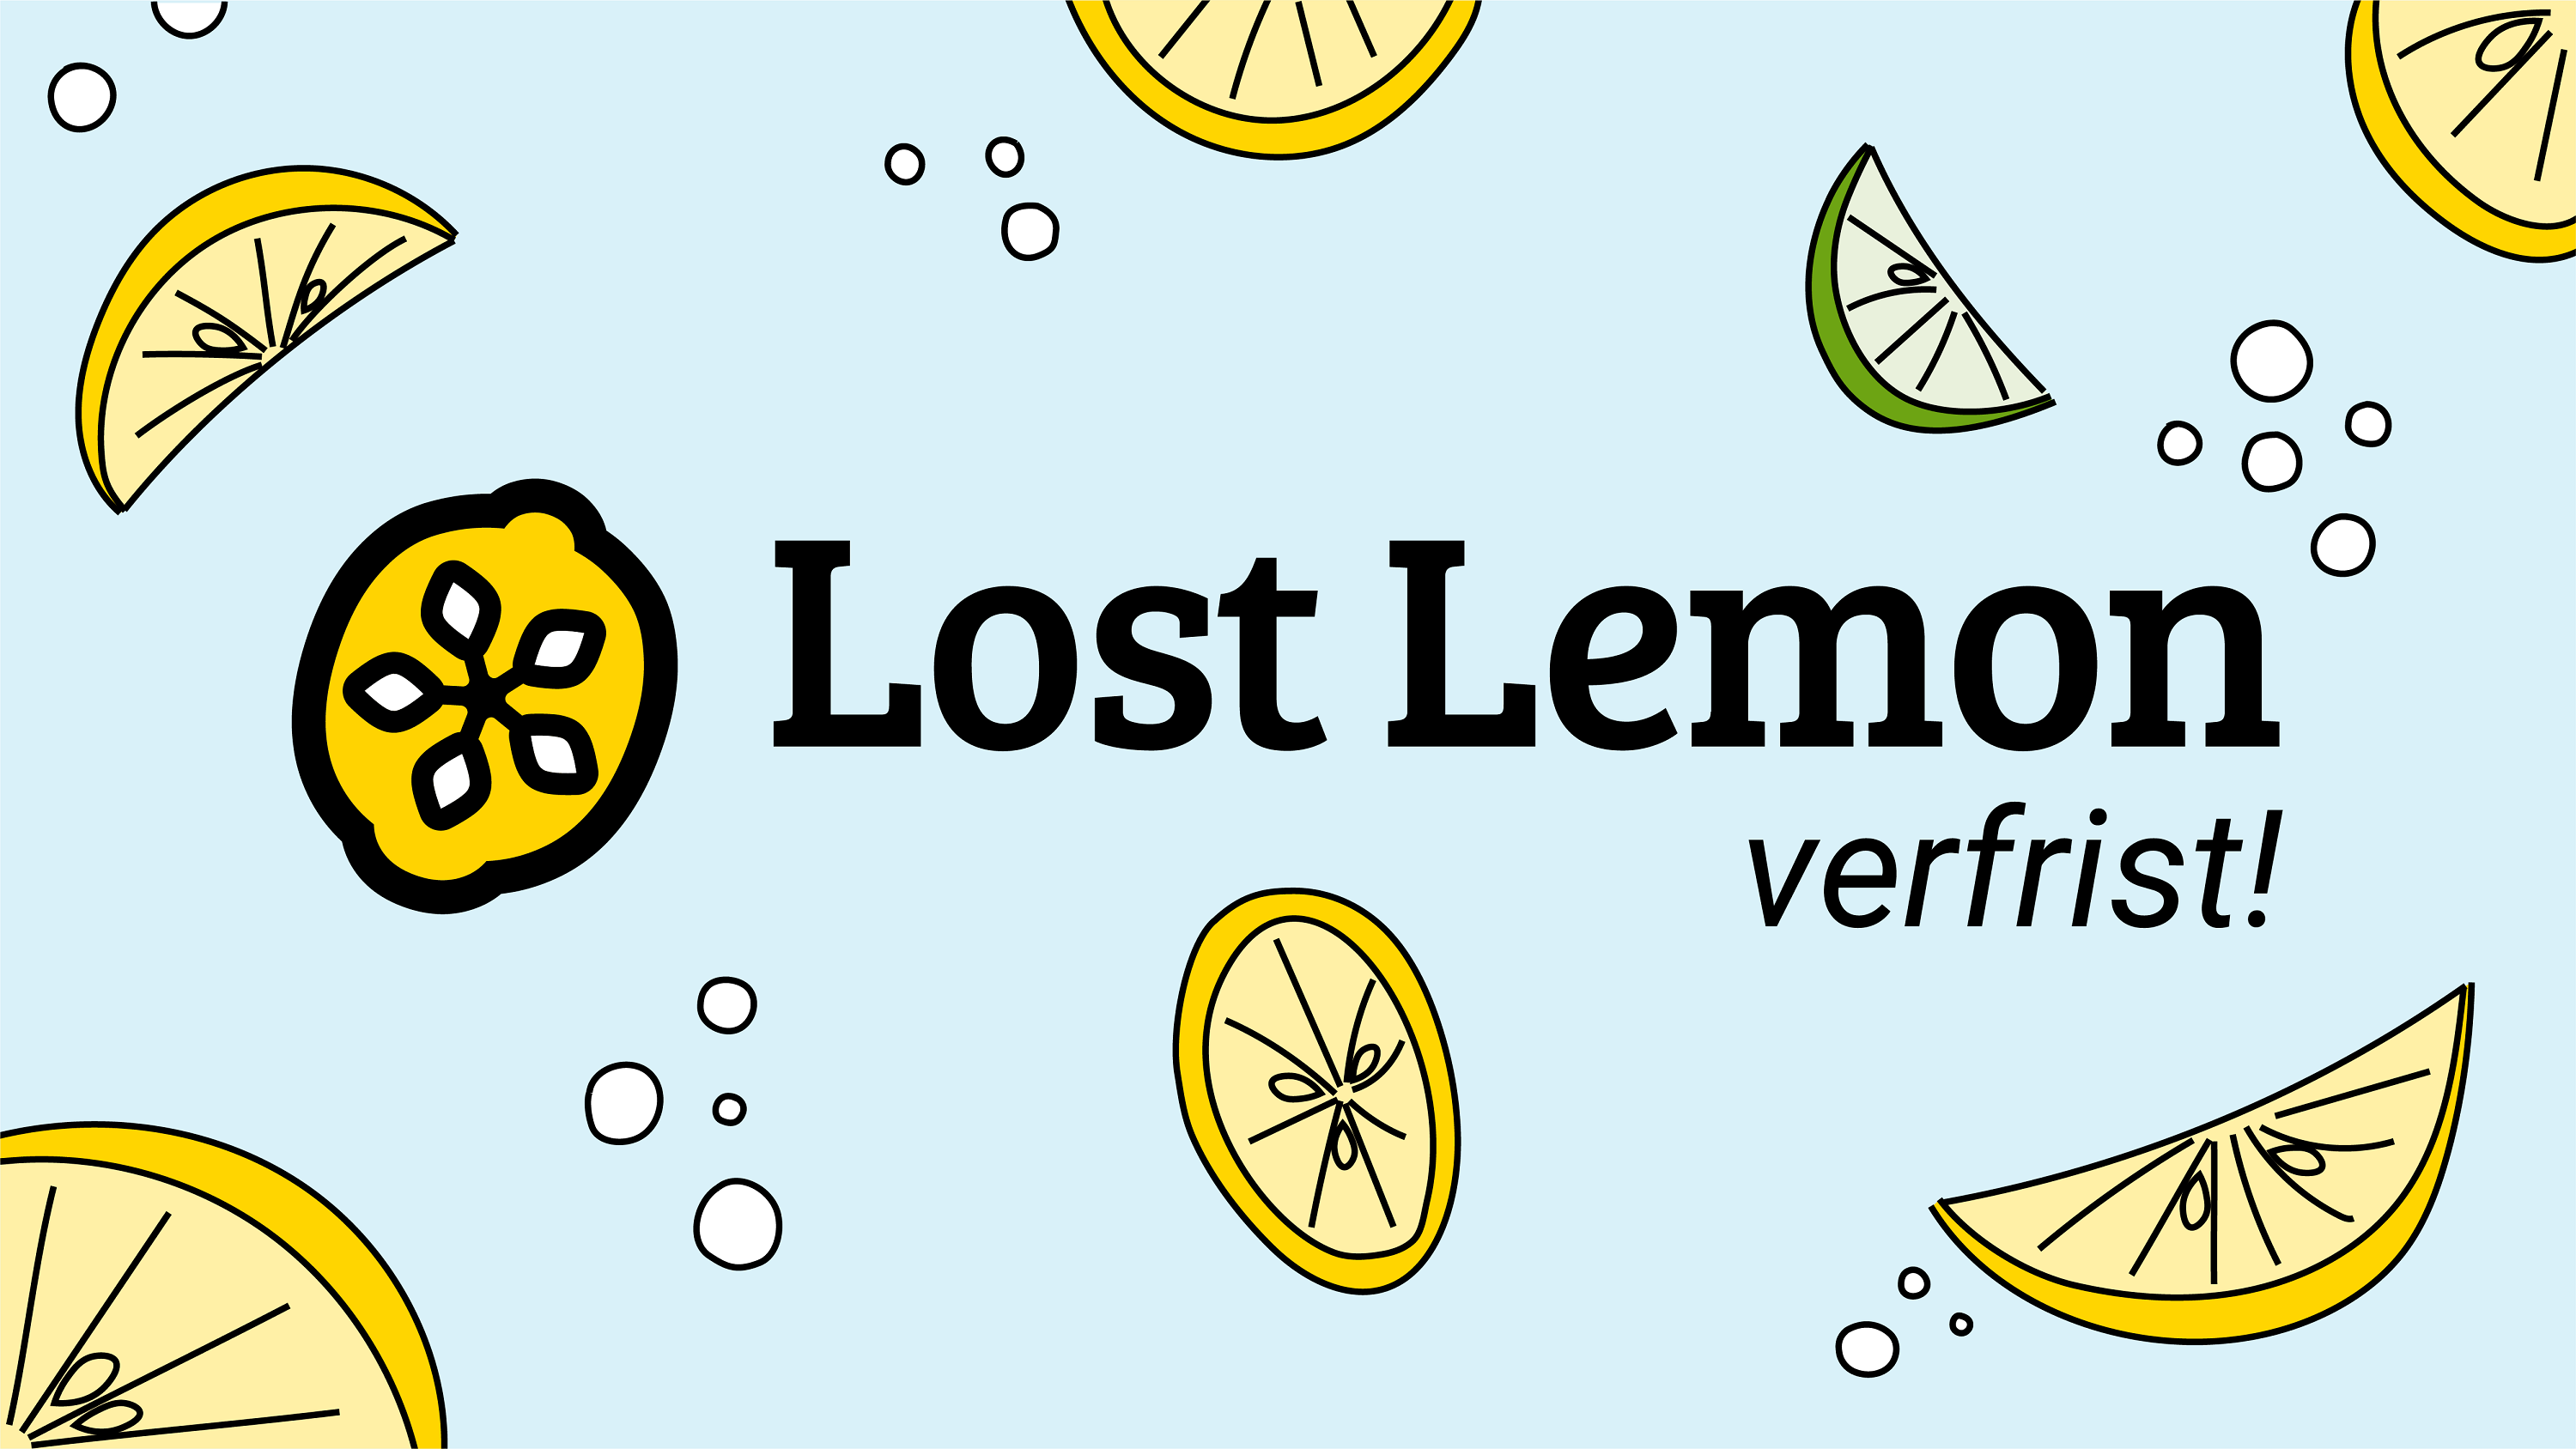 Lost Lemon heeft onlangs haar logo en website verfrist